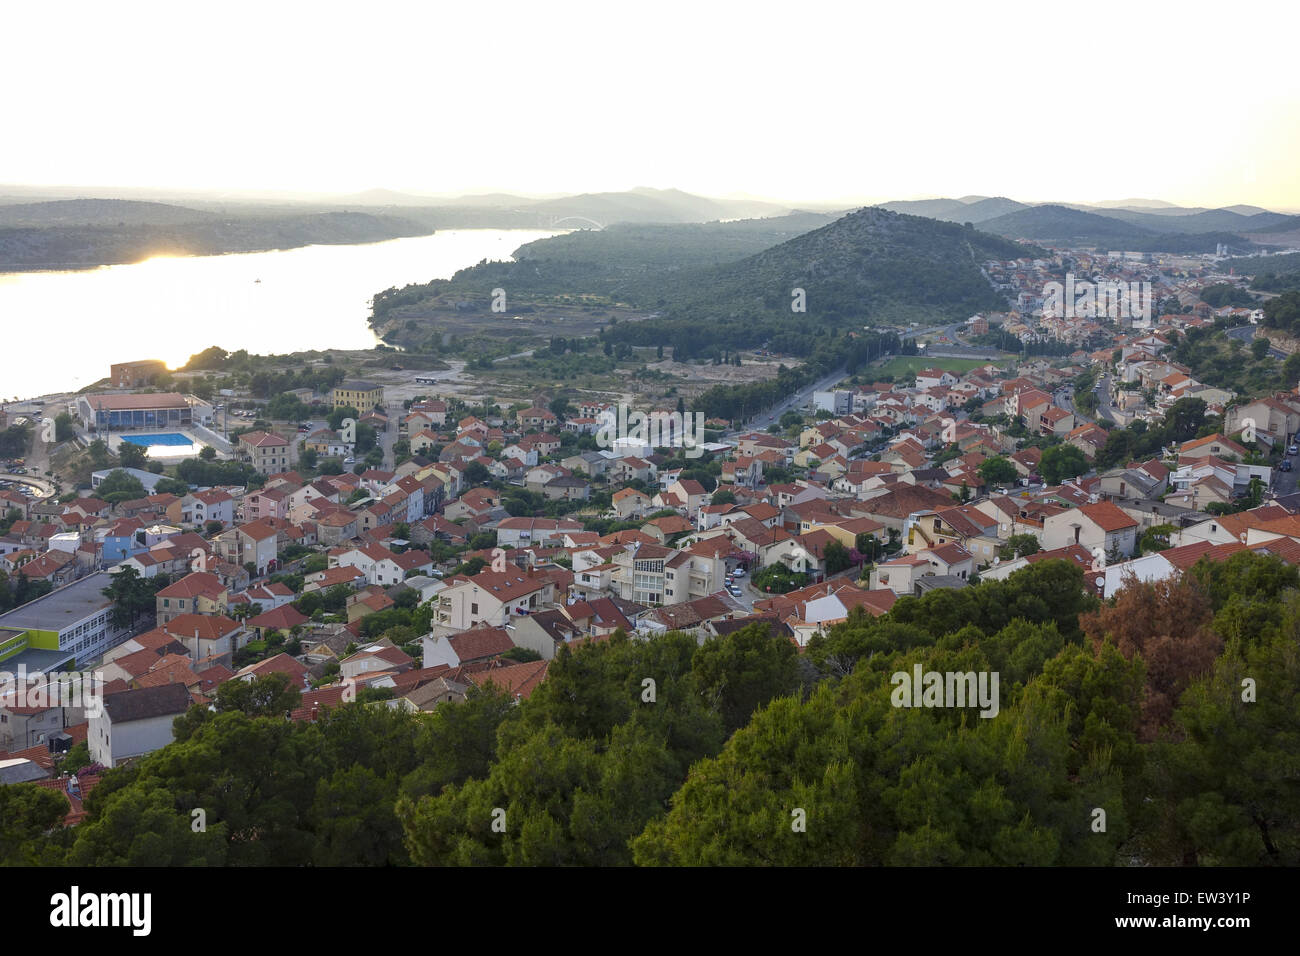 Sunset, Sibenik, Dalamatia, Croatia, Dalmatia Stock Photo